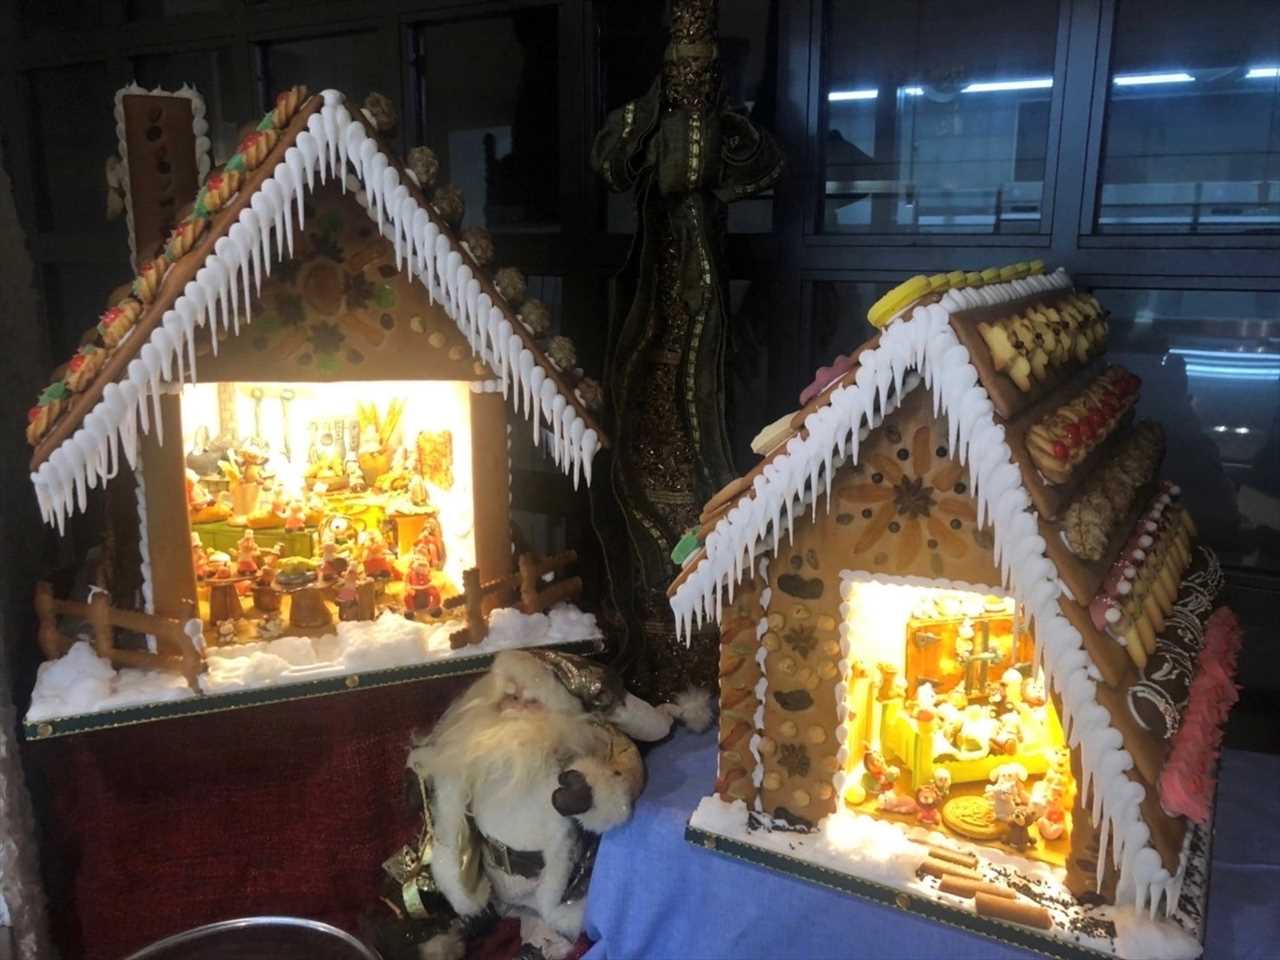 【クリスマス限定】ウィーン菓子で作られた丸ごと食べられるお菓子の家「ヘキセンハウス」が登場